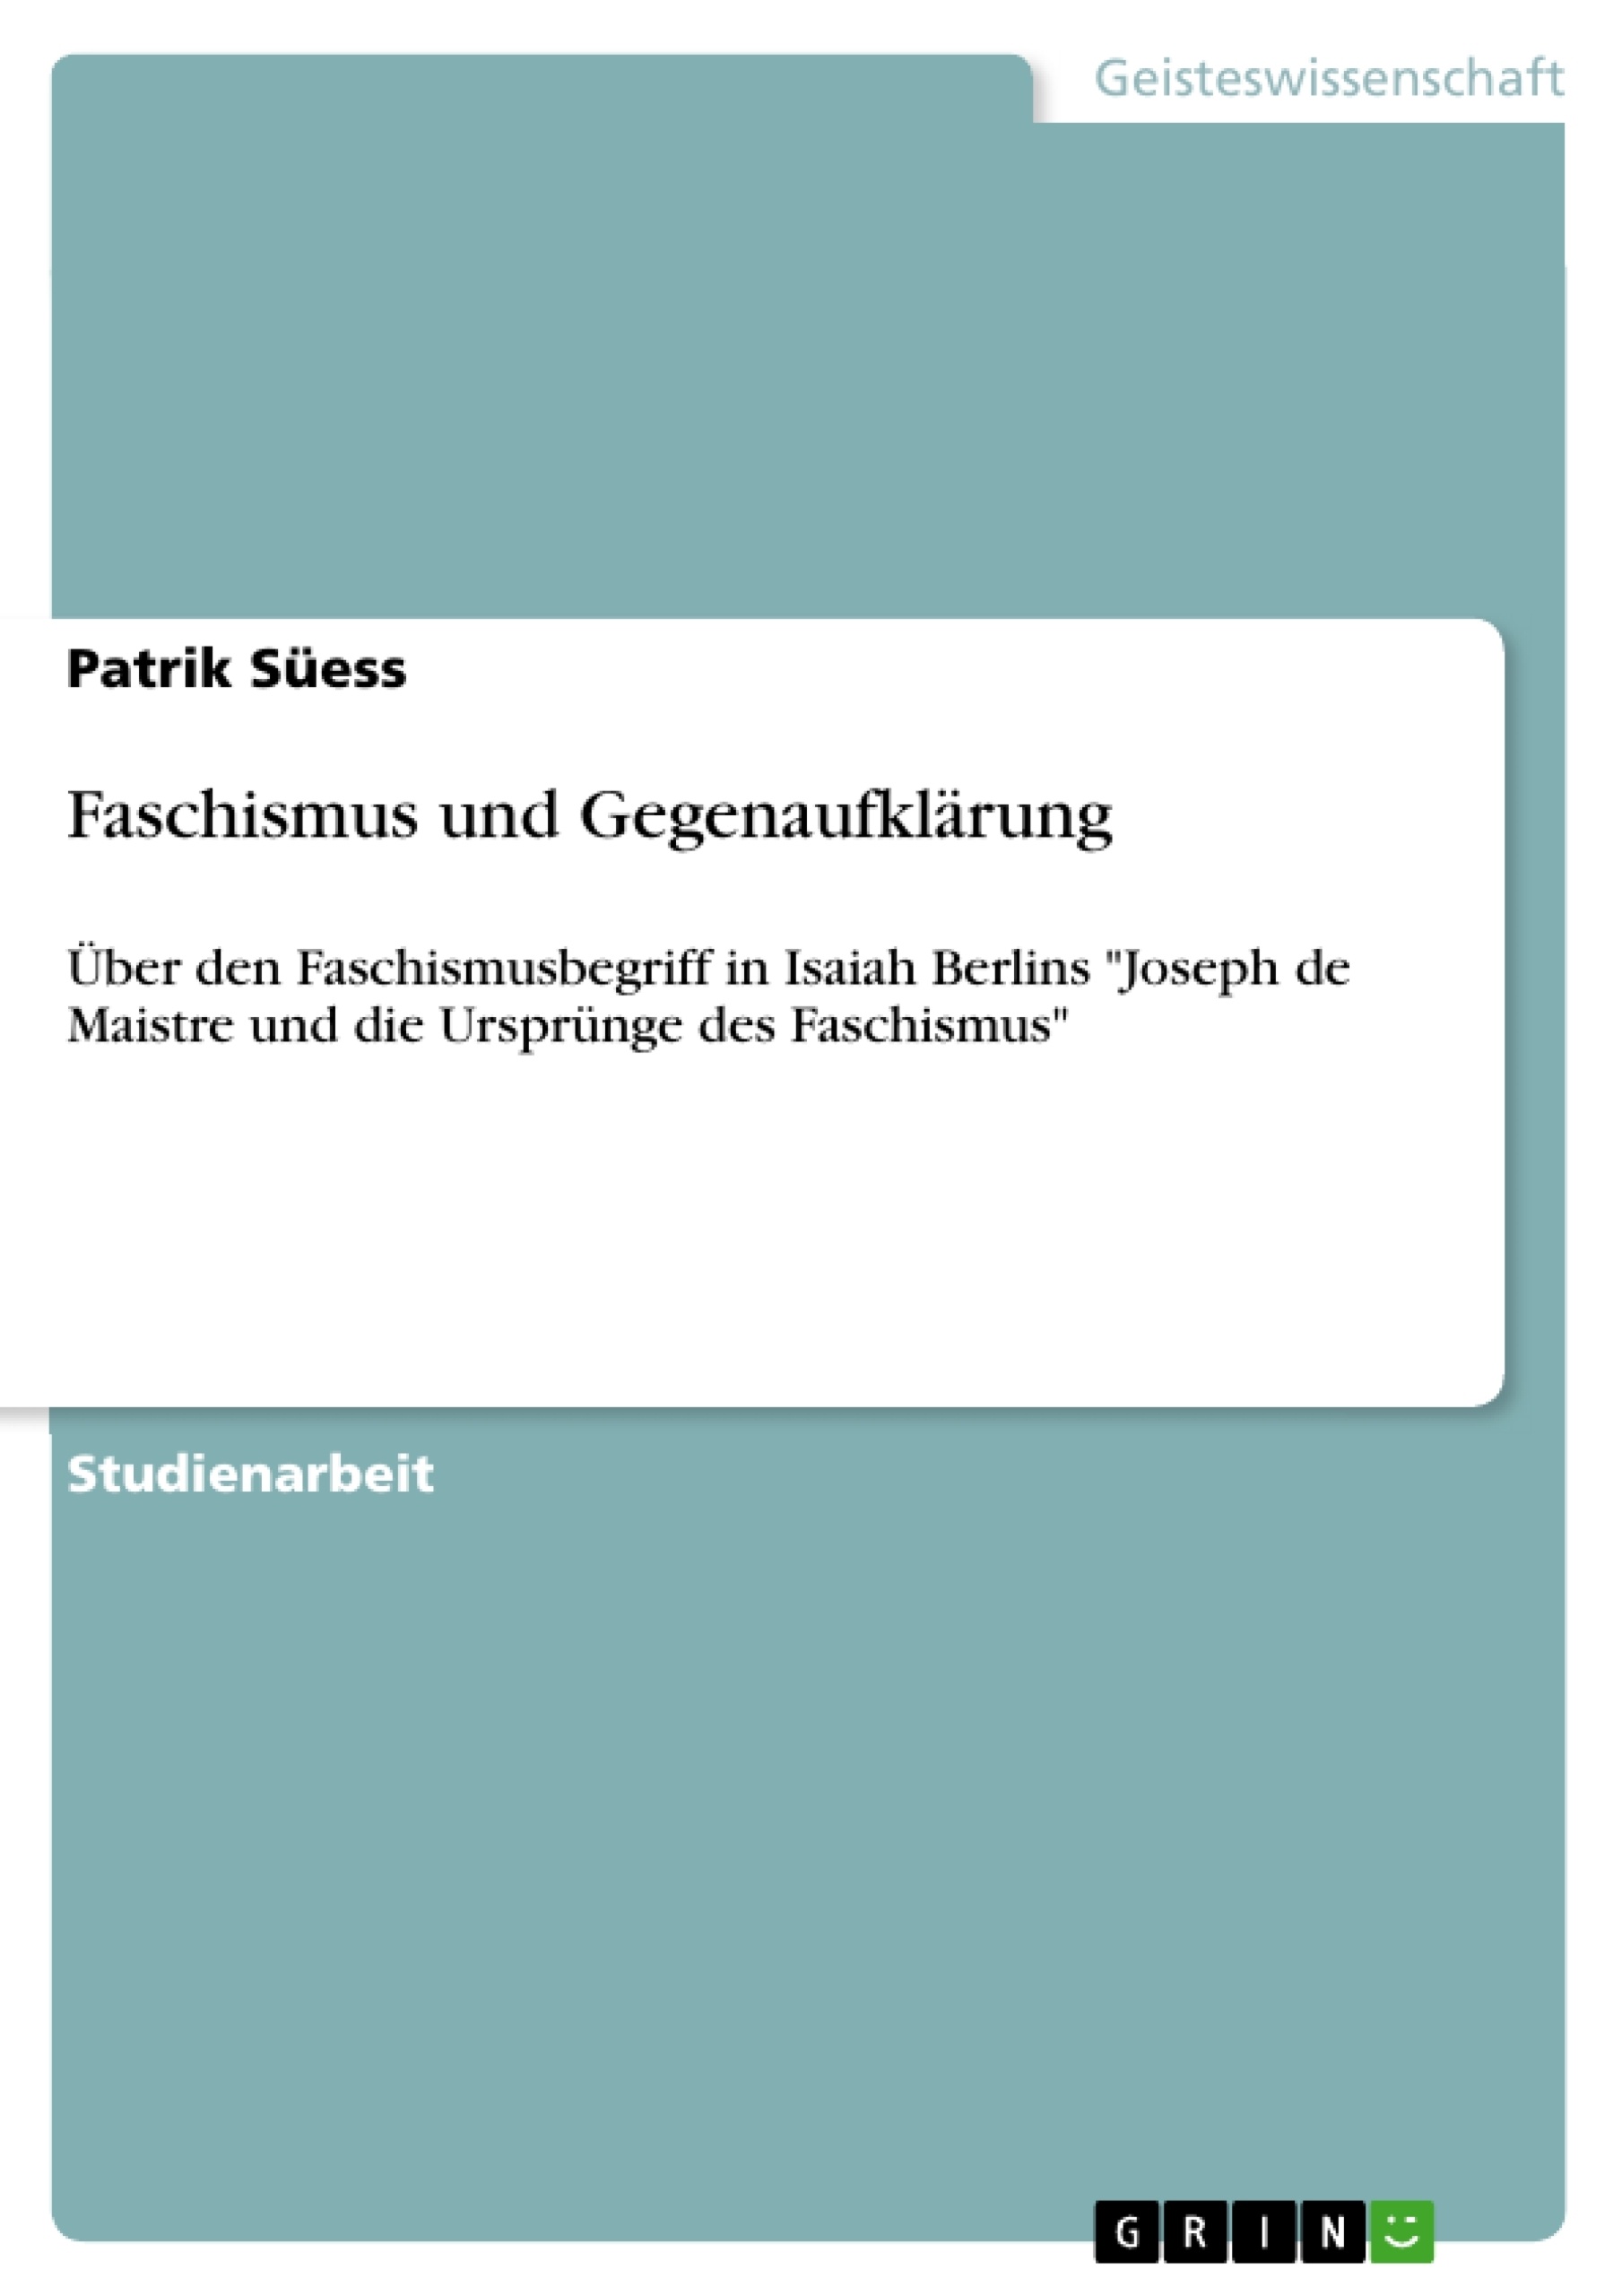 Title: Faschismus und Gegenaufklärung